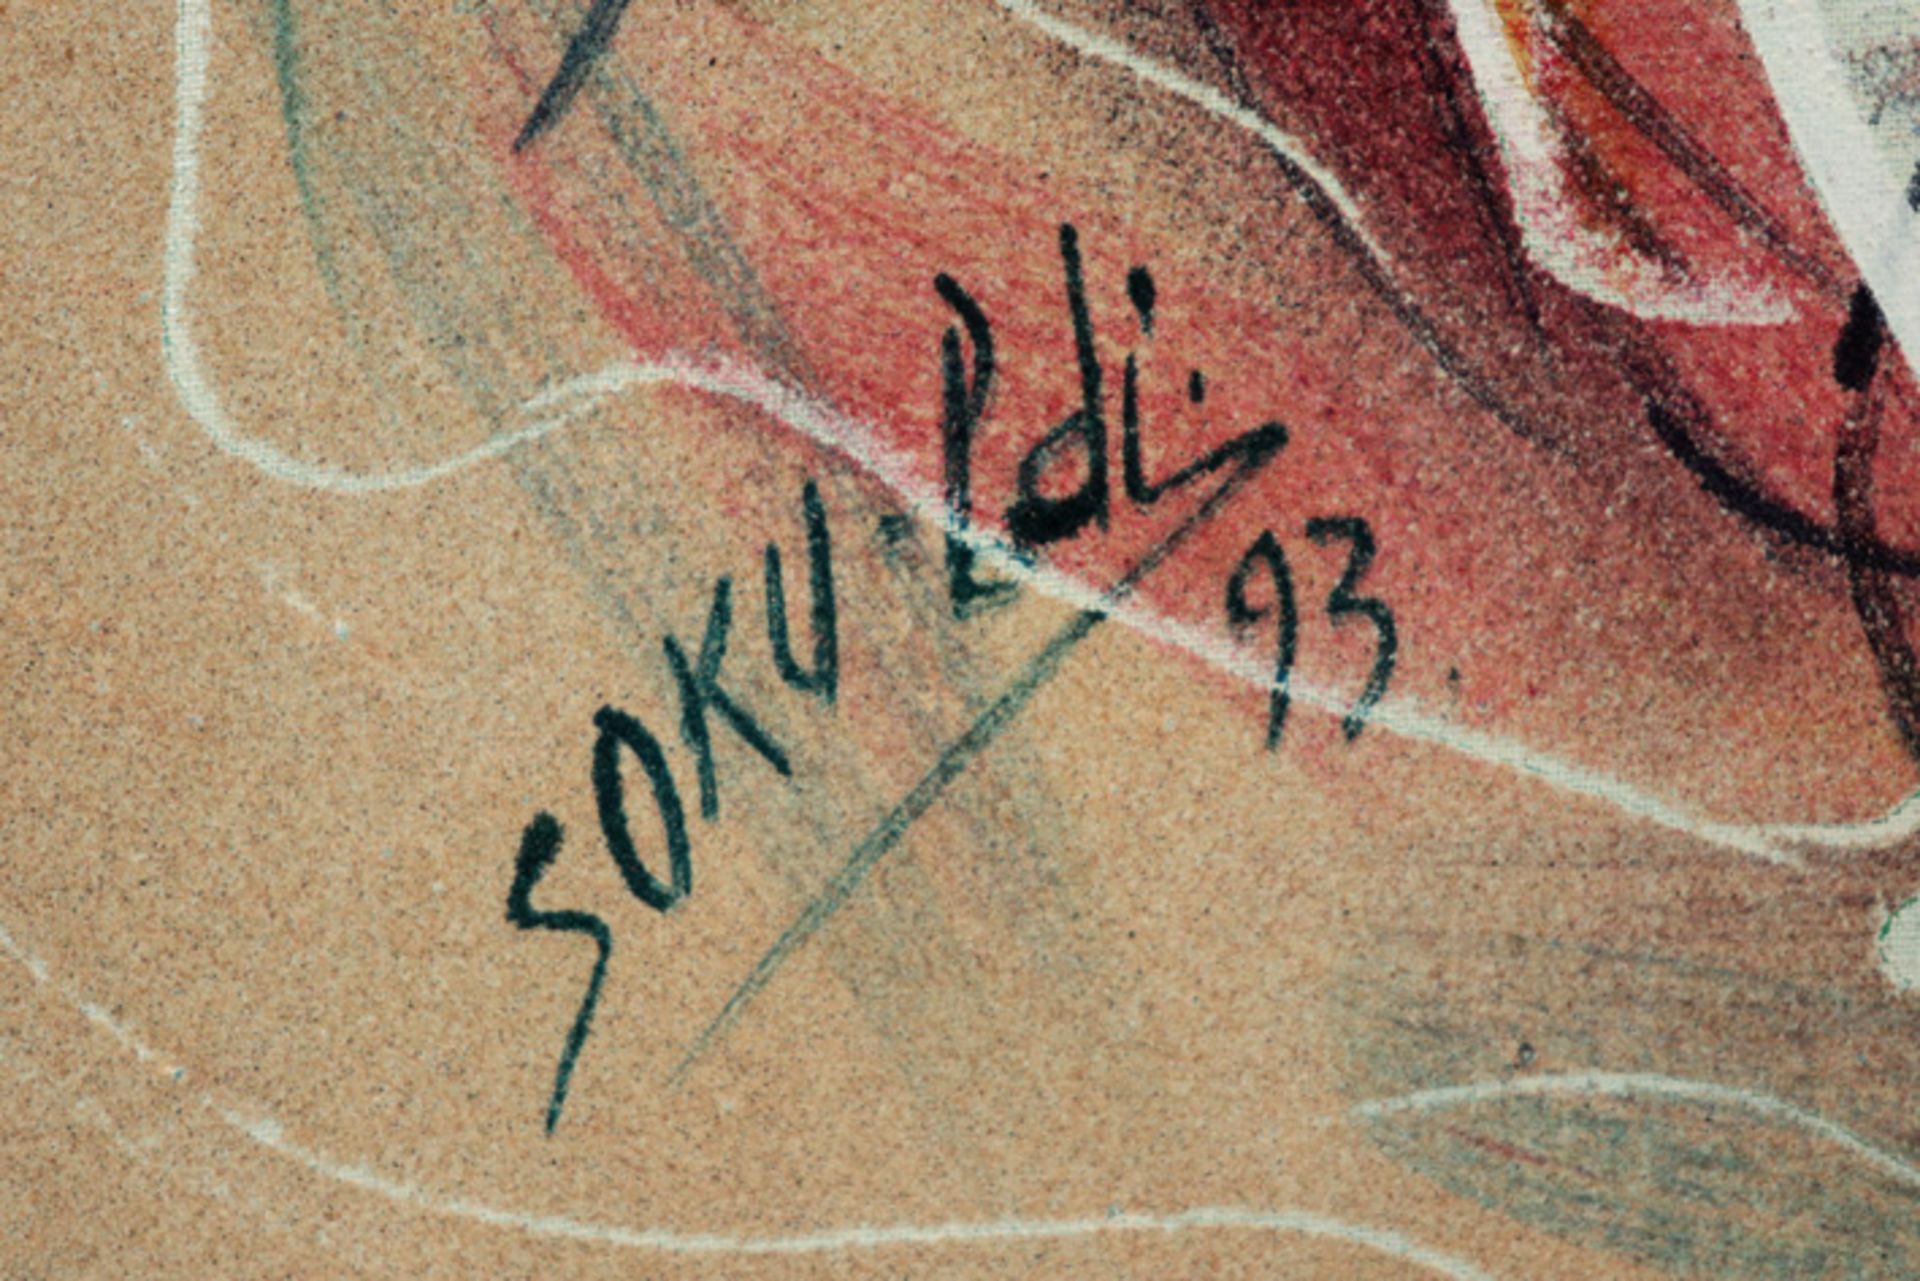 20th Cent. African oil on canvas - signed Ldi Soku || SOKU LDI (20° EEUW) olieverfschilderij op doek - Bild 2 aus 3